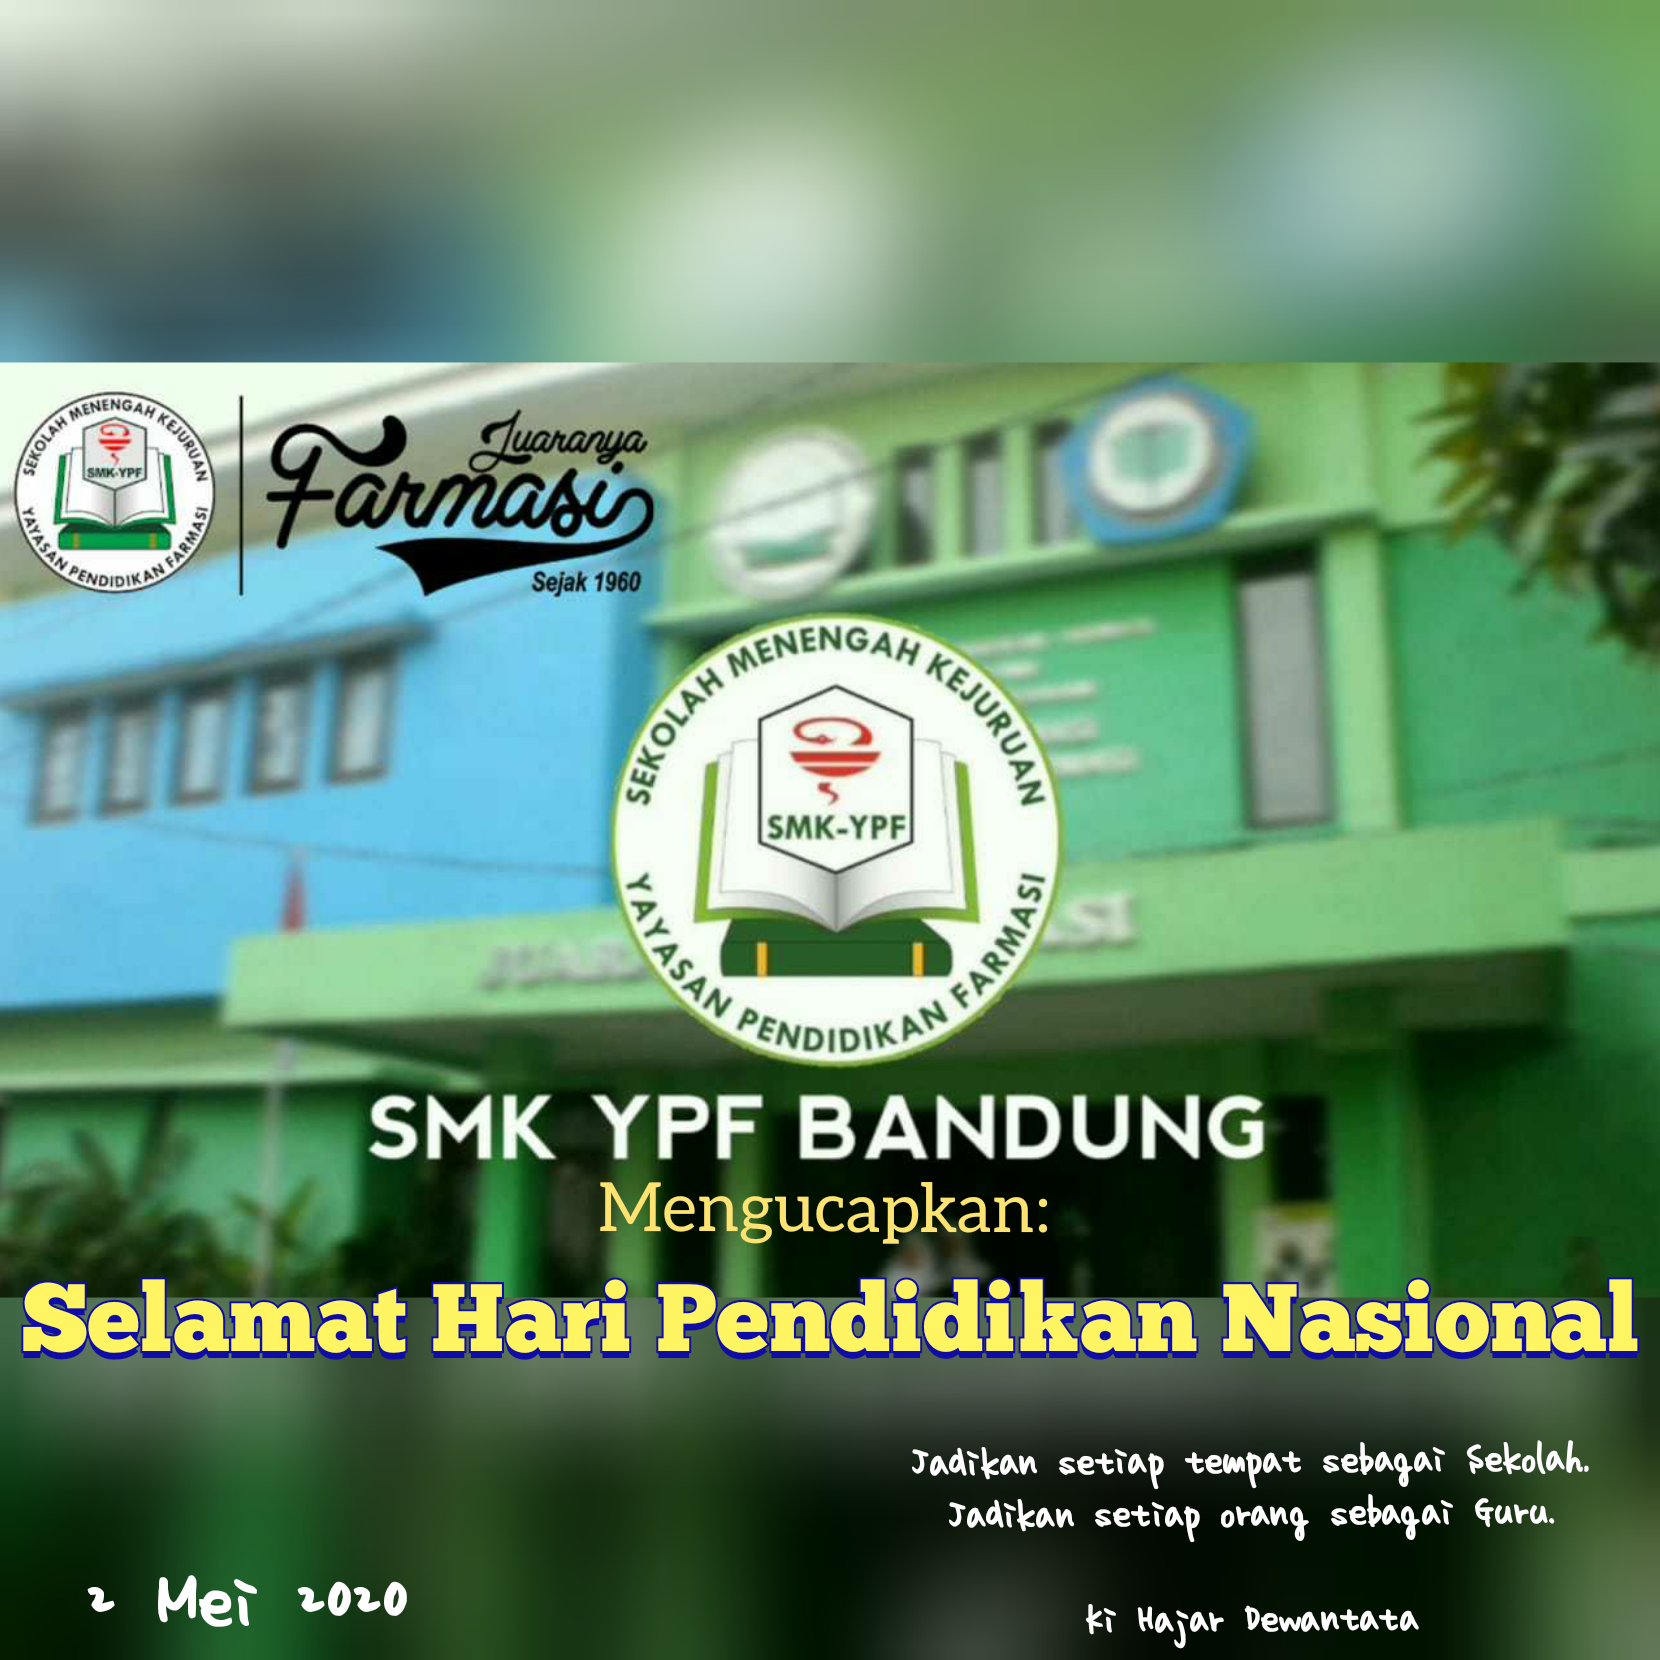 SMK YPF Bandung tanggap Covid 19